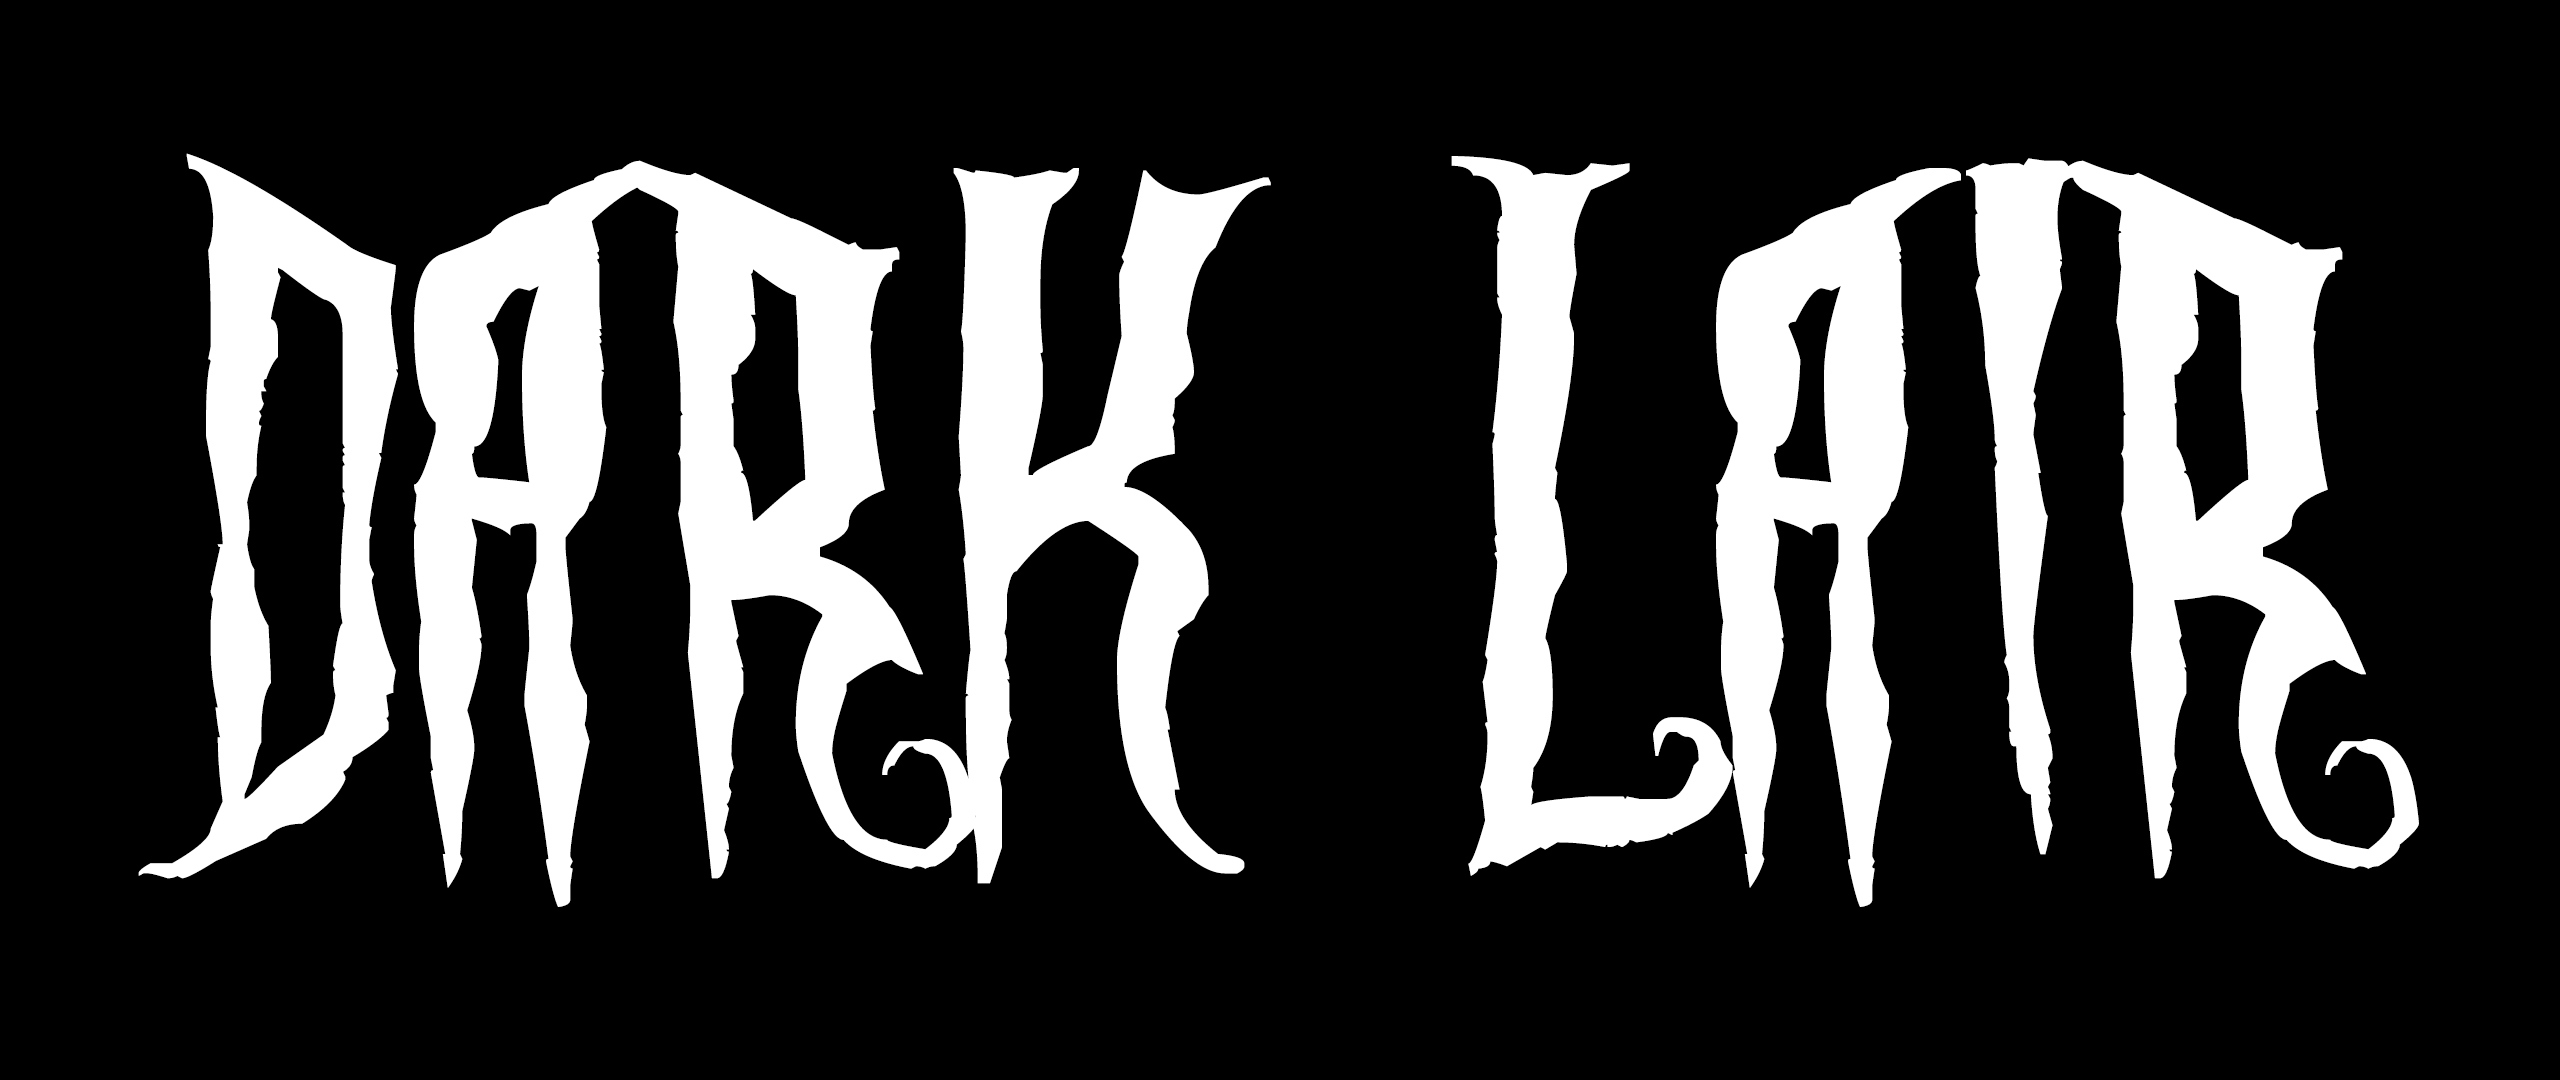 Dark Lair v1.5 by RizkyCorp